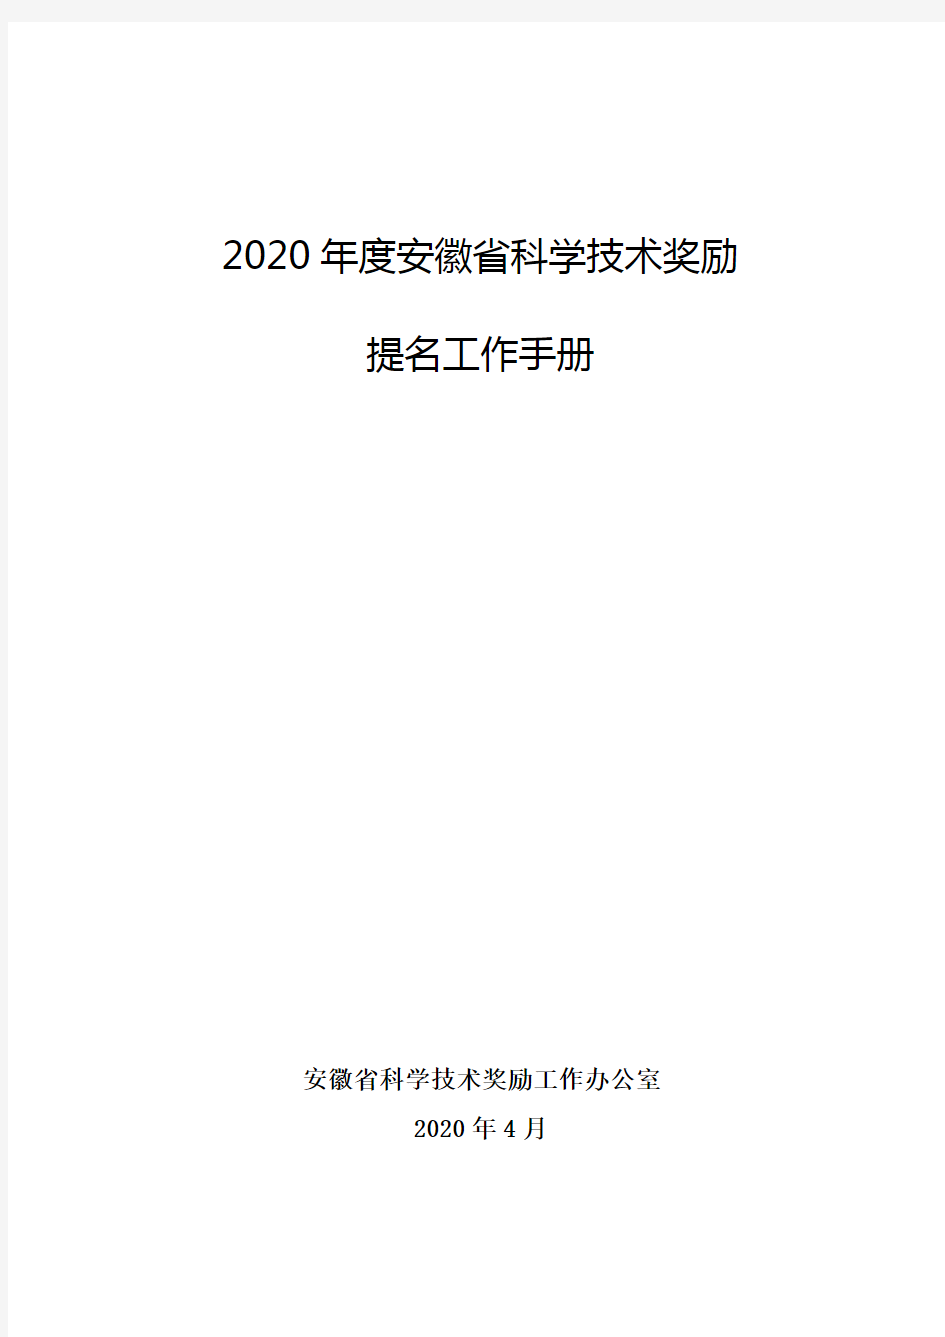 2020年度安徽省科学技术奖励